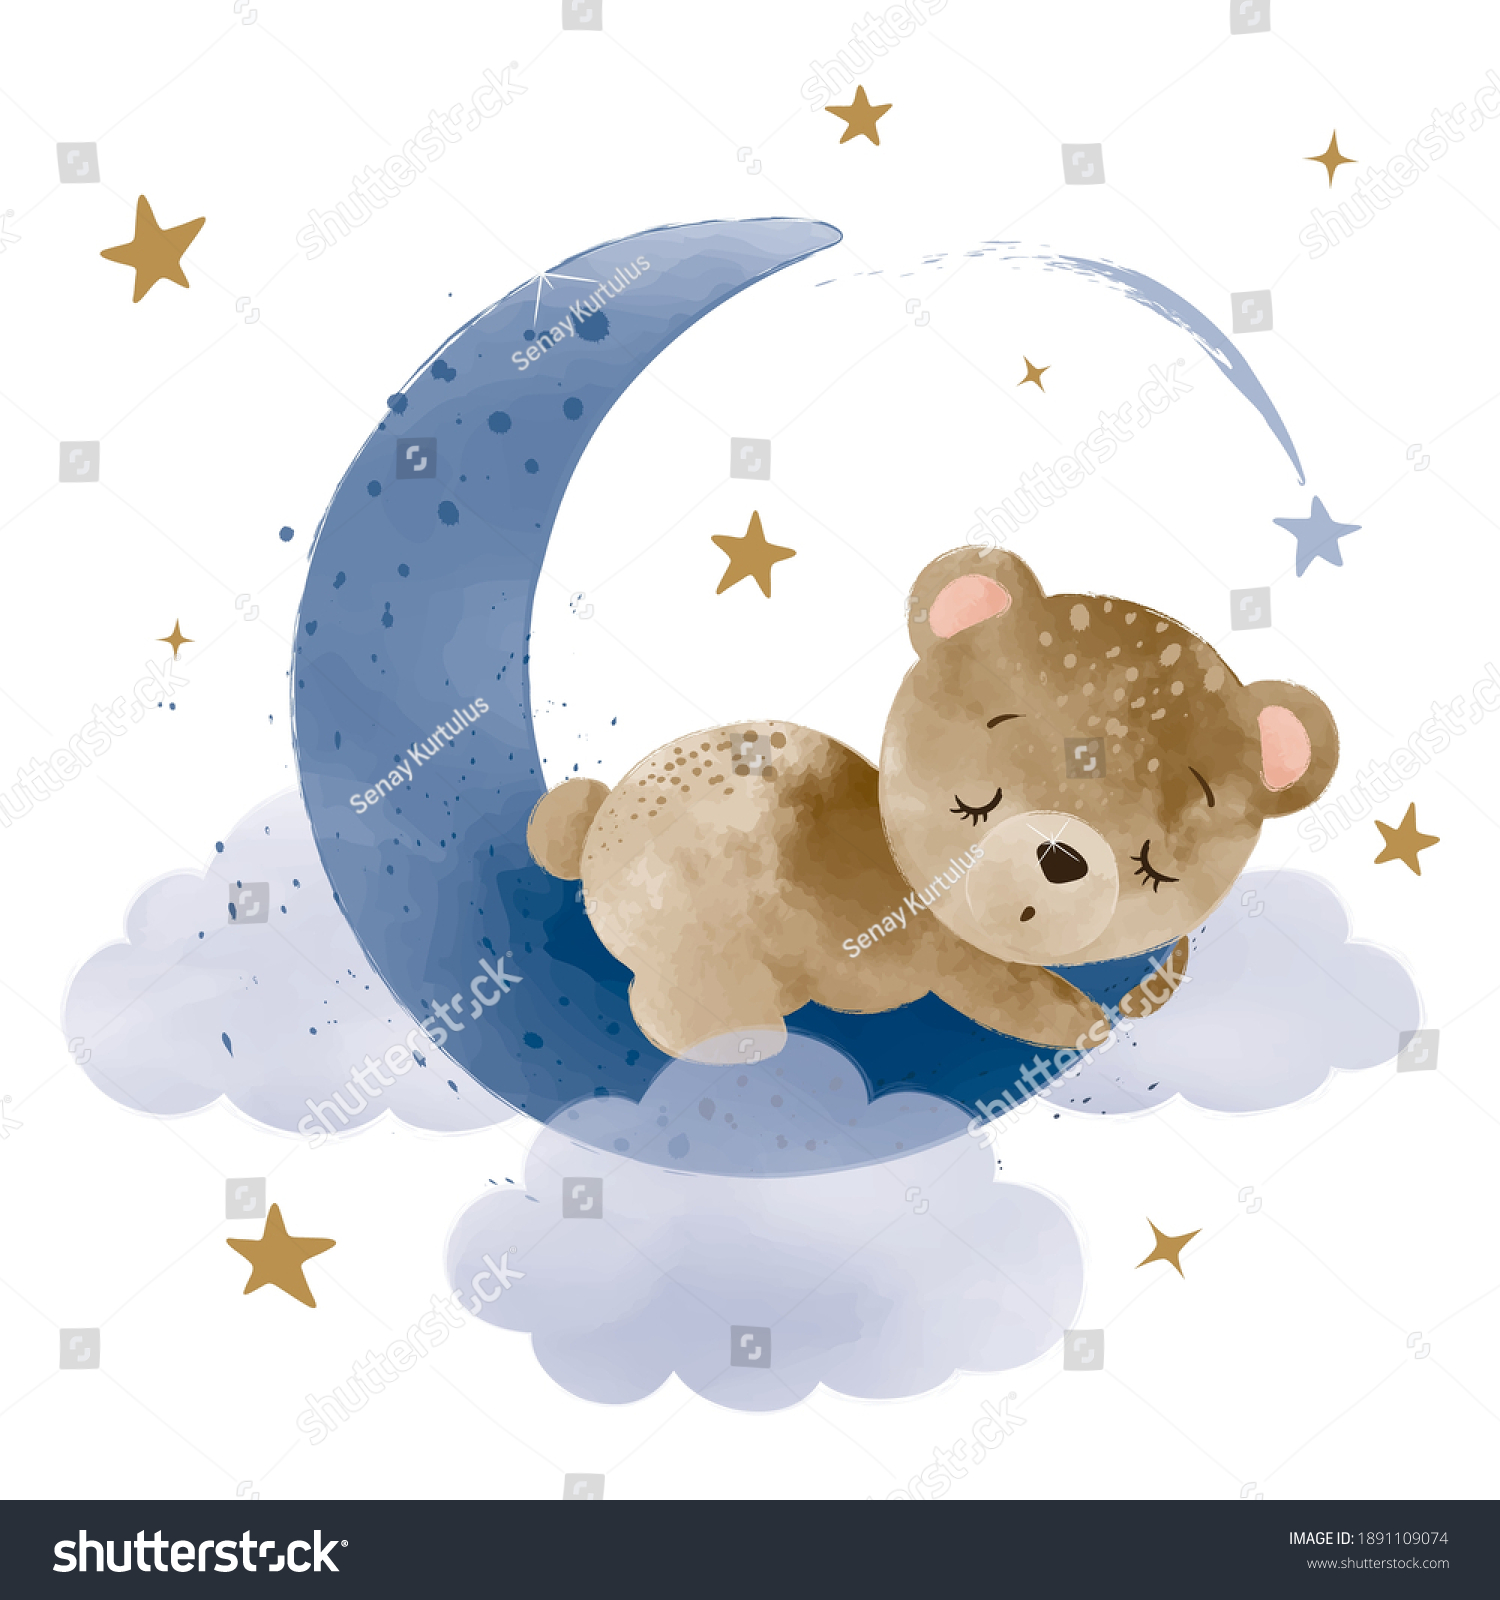 Медвежонок спит на Луне